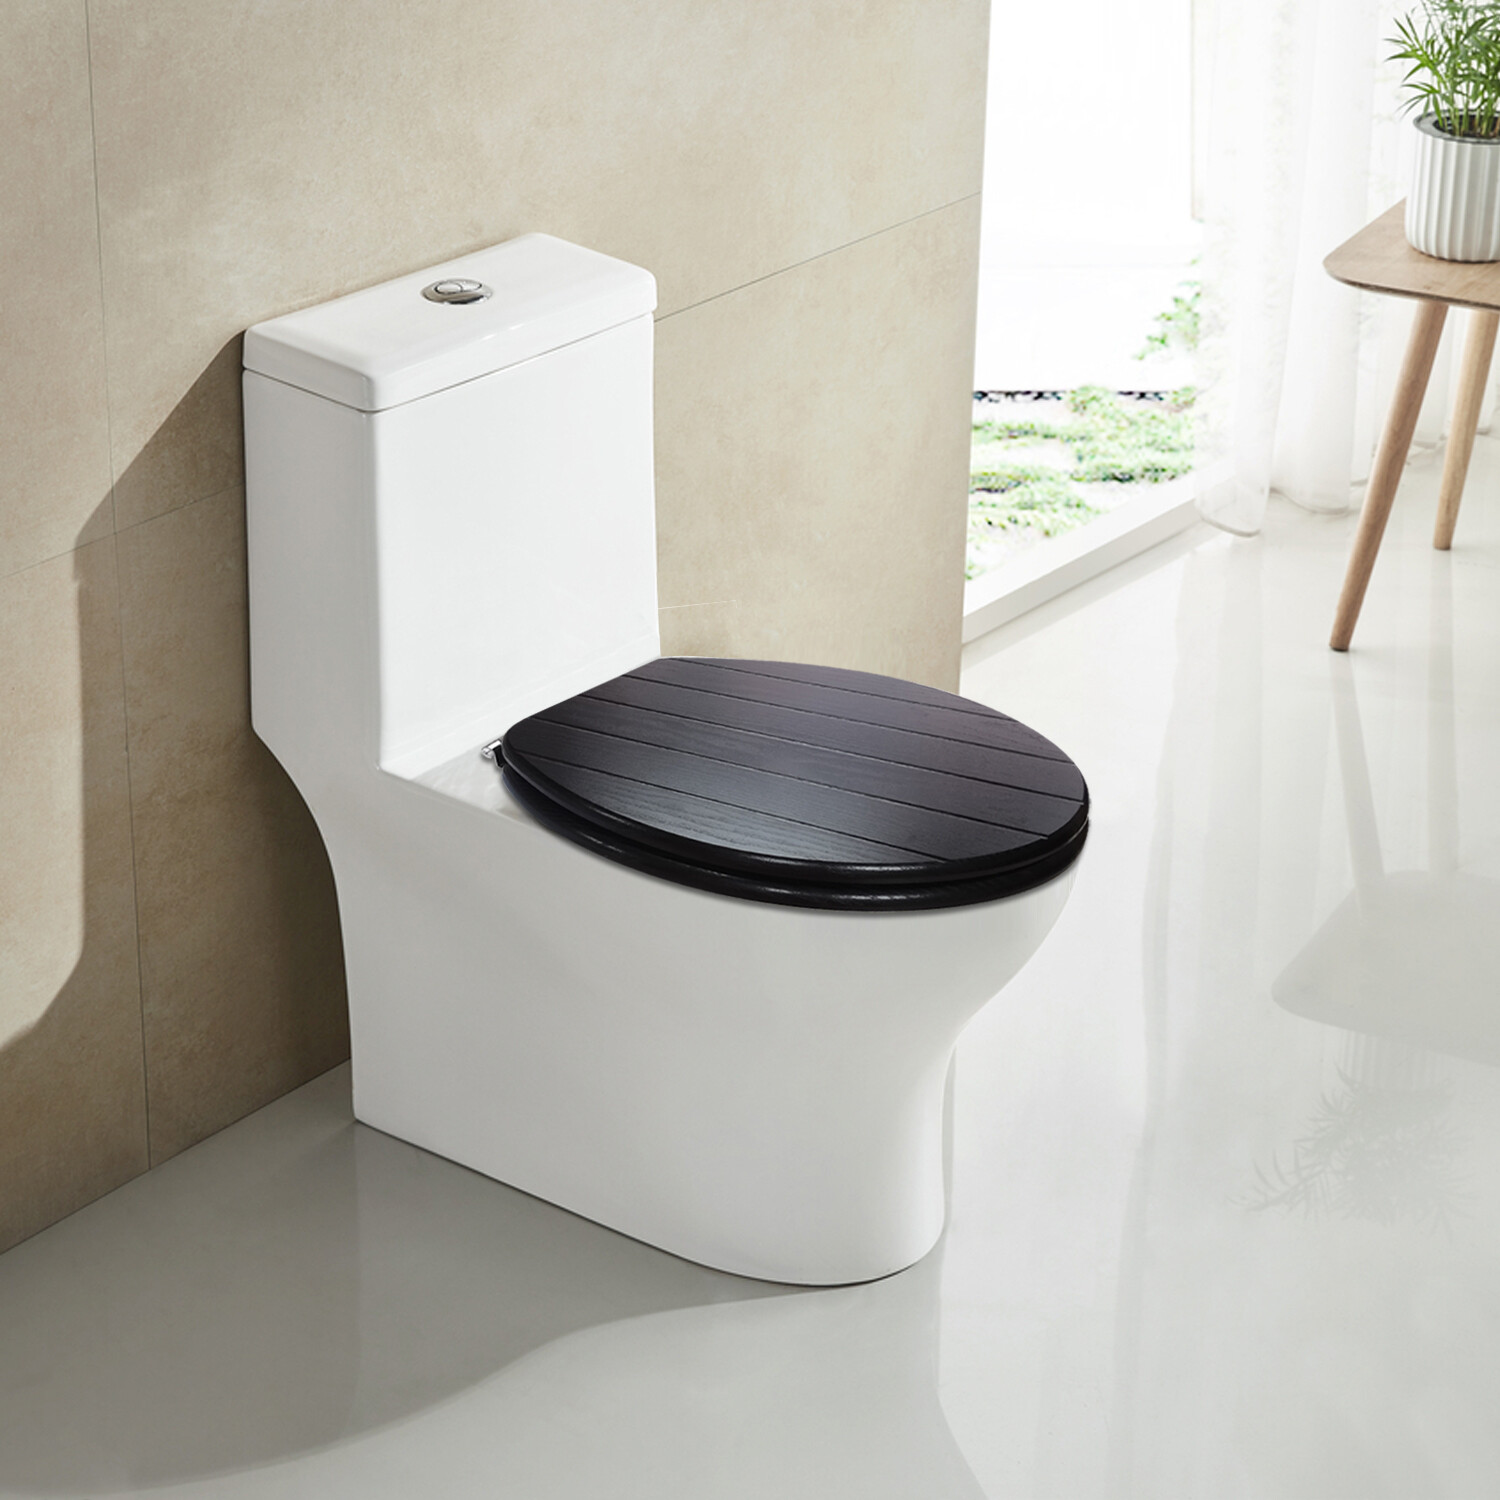 Washed Blackwood MDF Toilet Seat Image 3